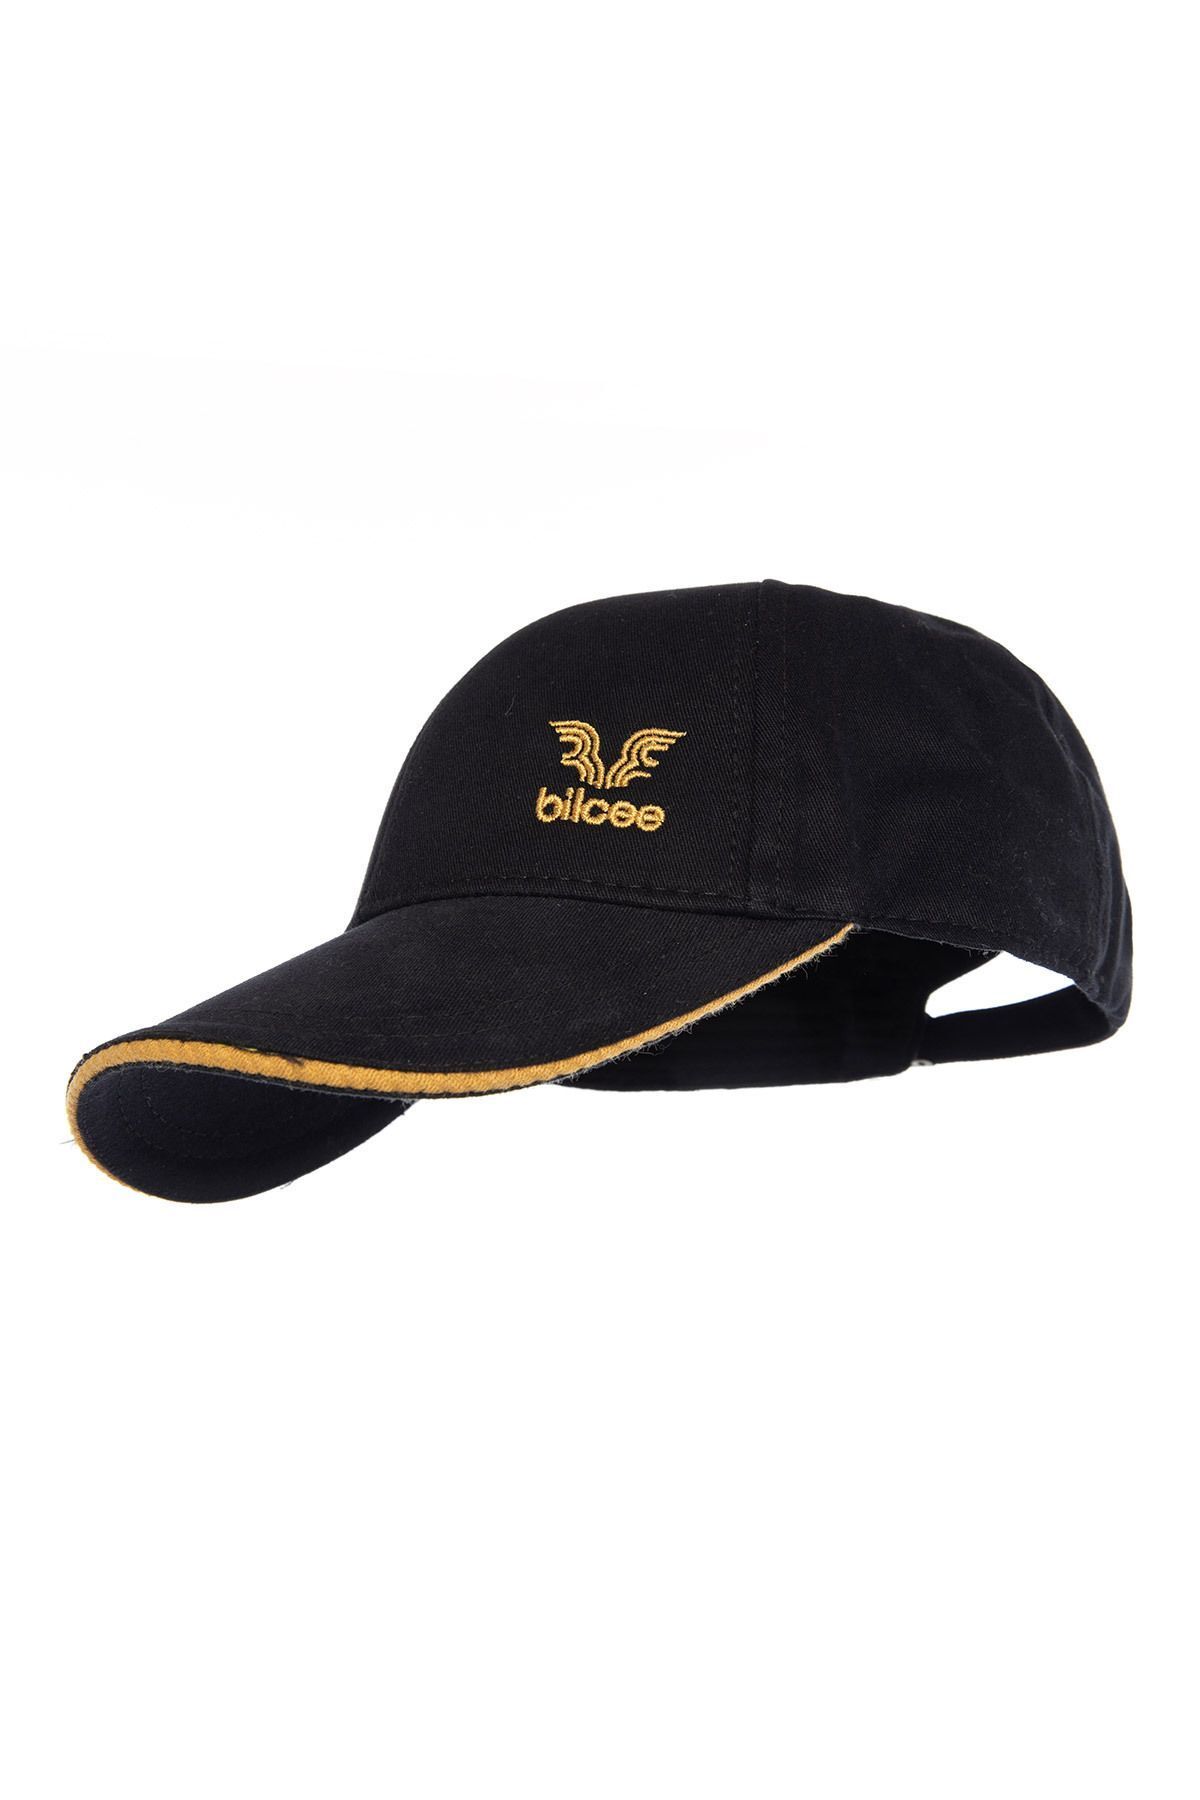 bilcee Unisex Sarı Şeritli Şapka 1590